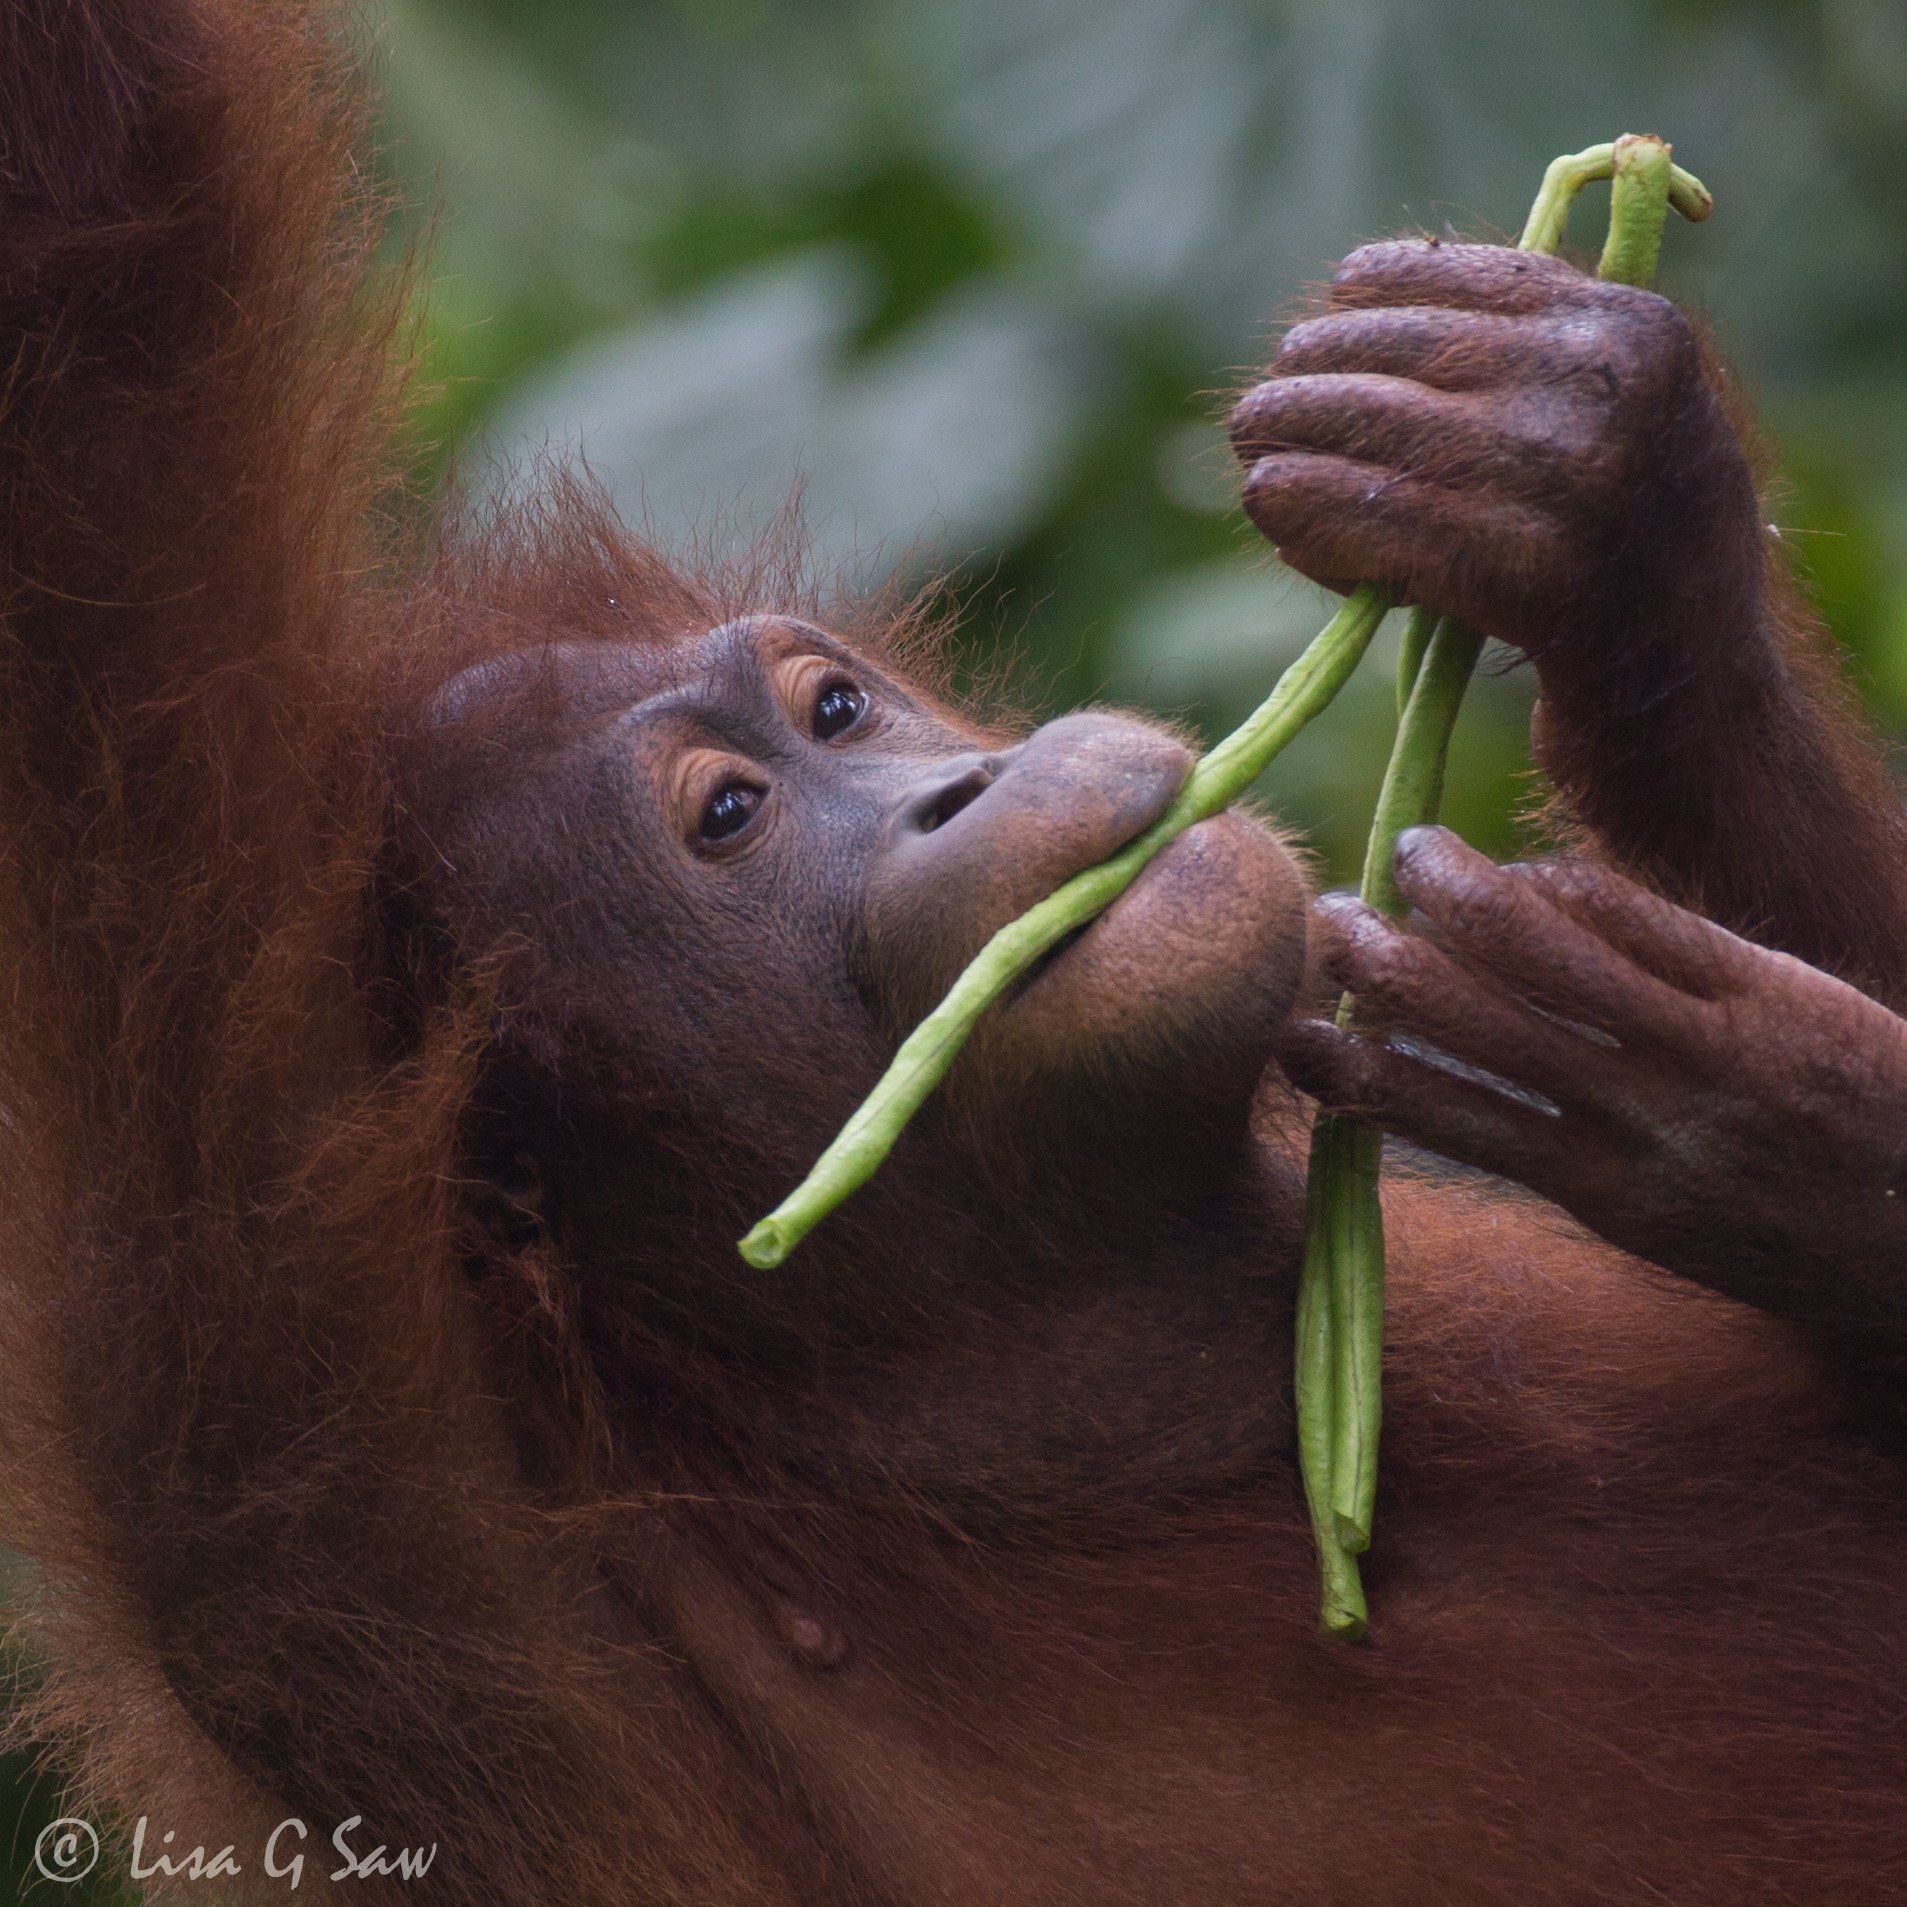 Orangutan close up eating beans at Sepilok